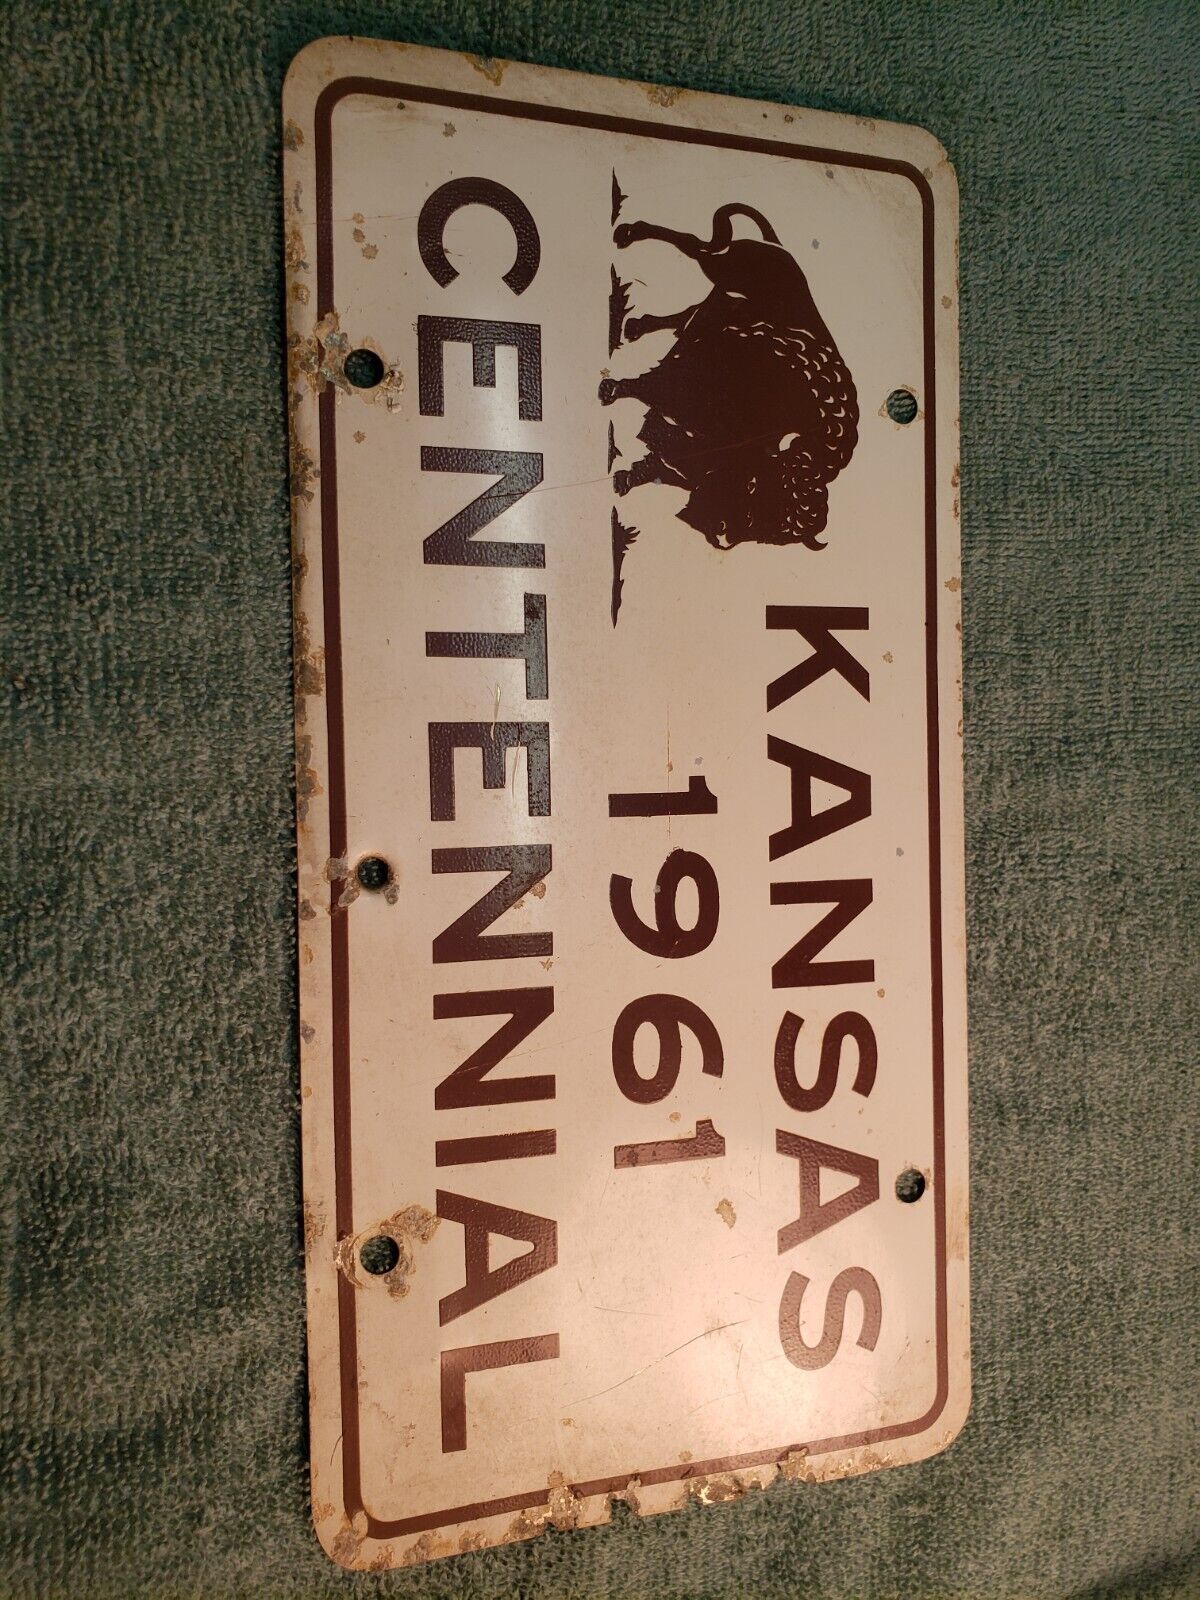 1961 Kansas Centennial License Plate